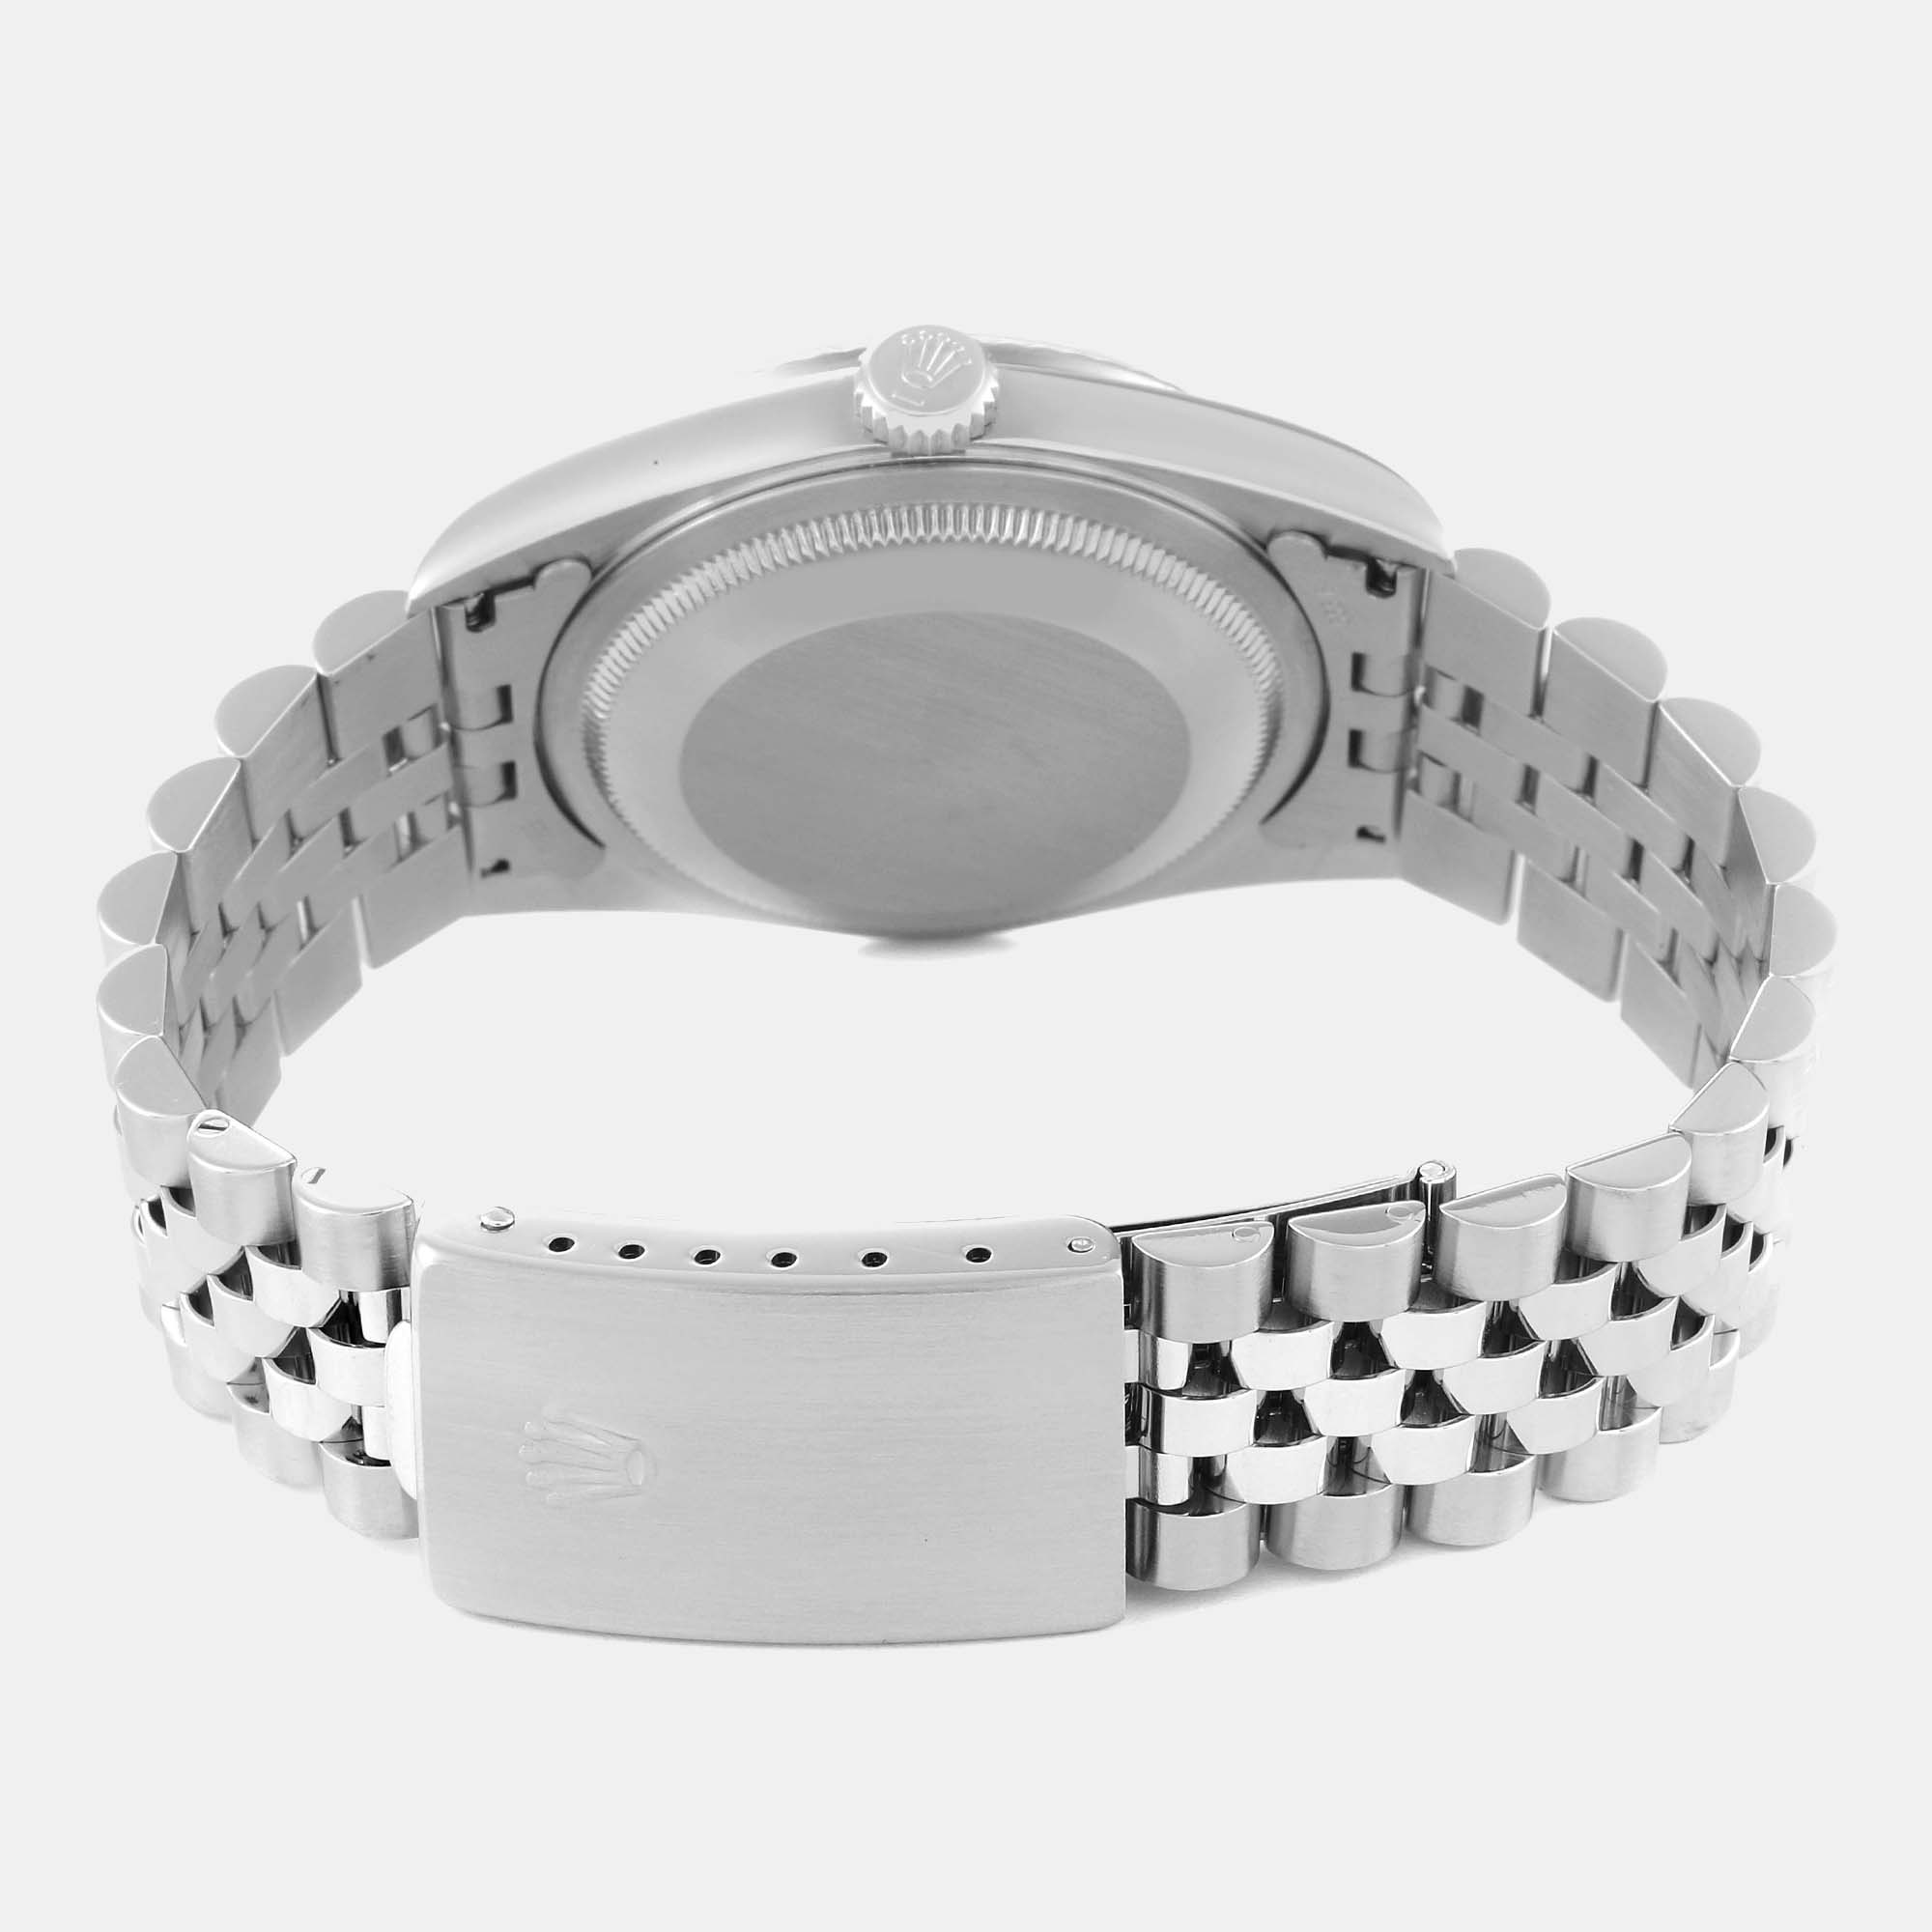 Rolex Datejust Steel White Gold Diamond Dial Men's Watch 16234